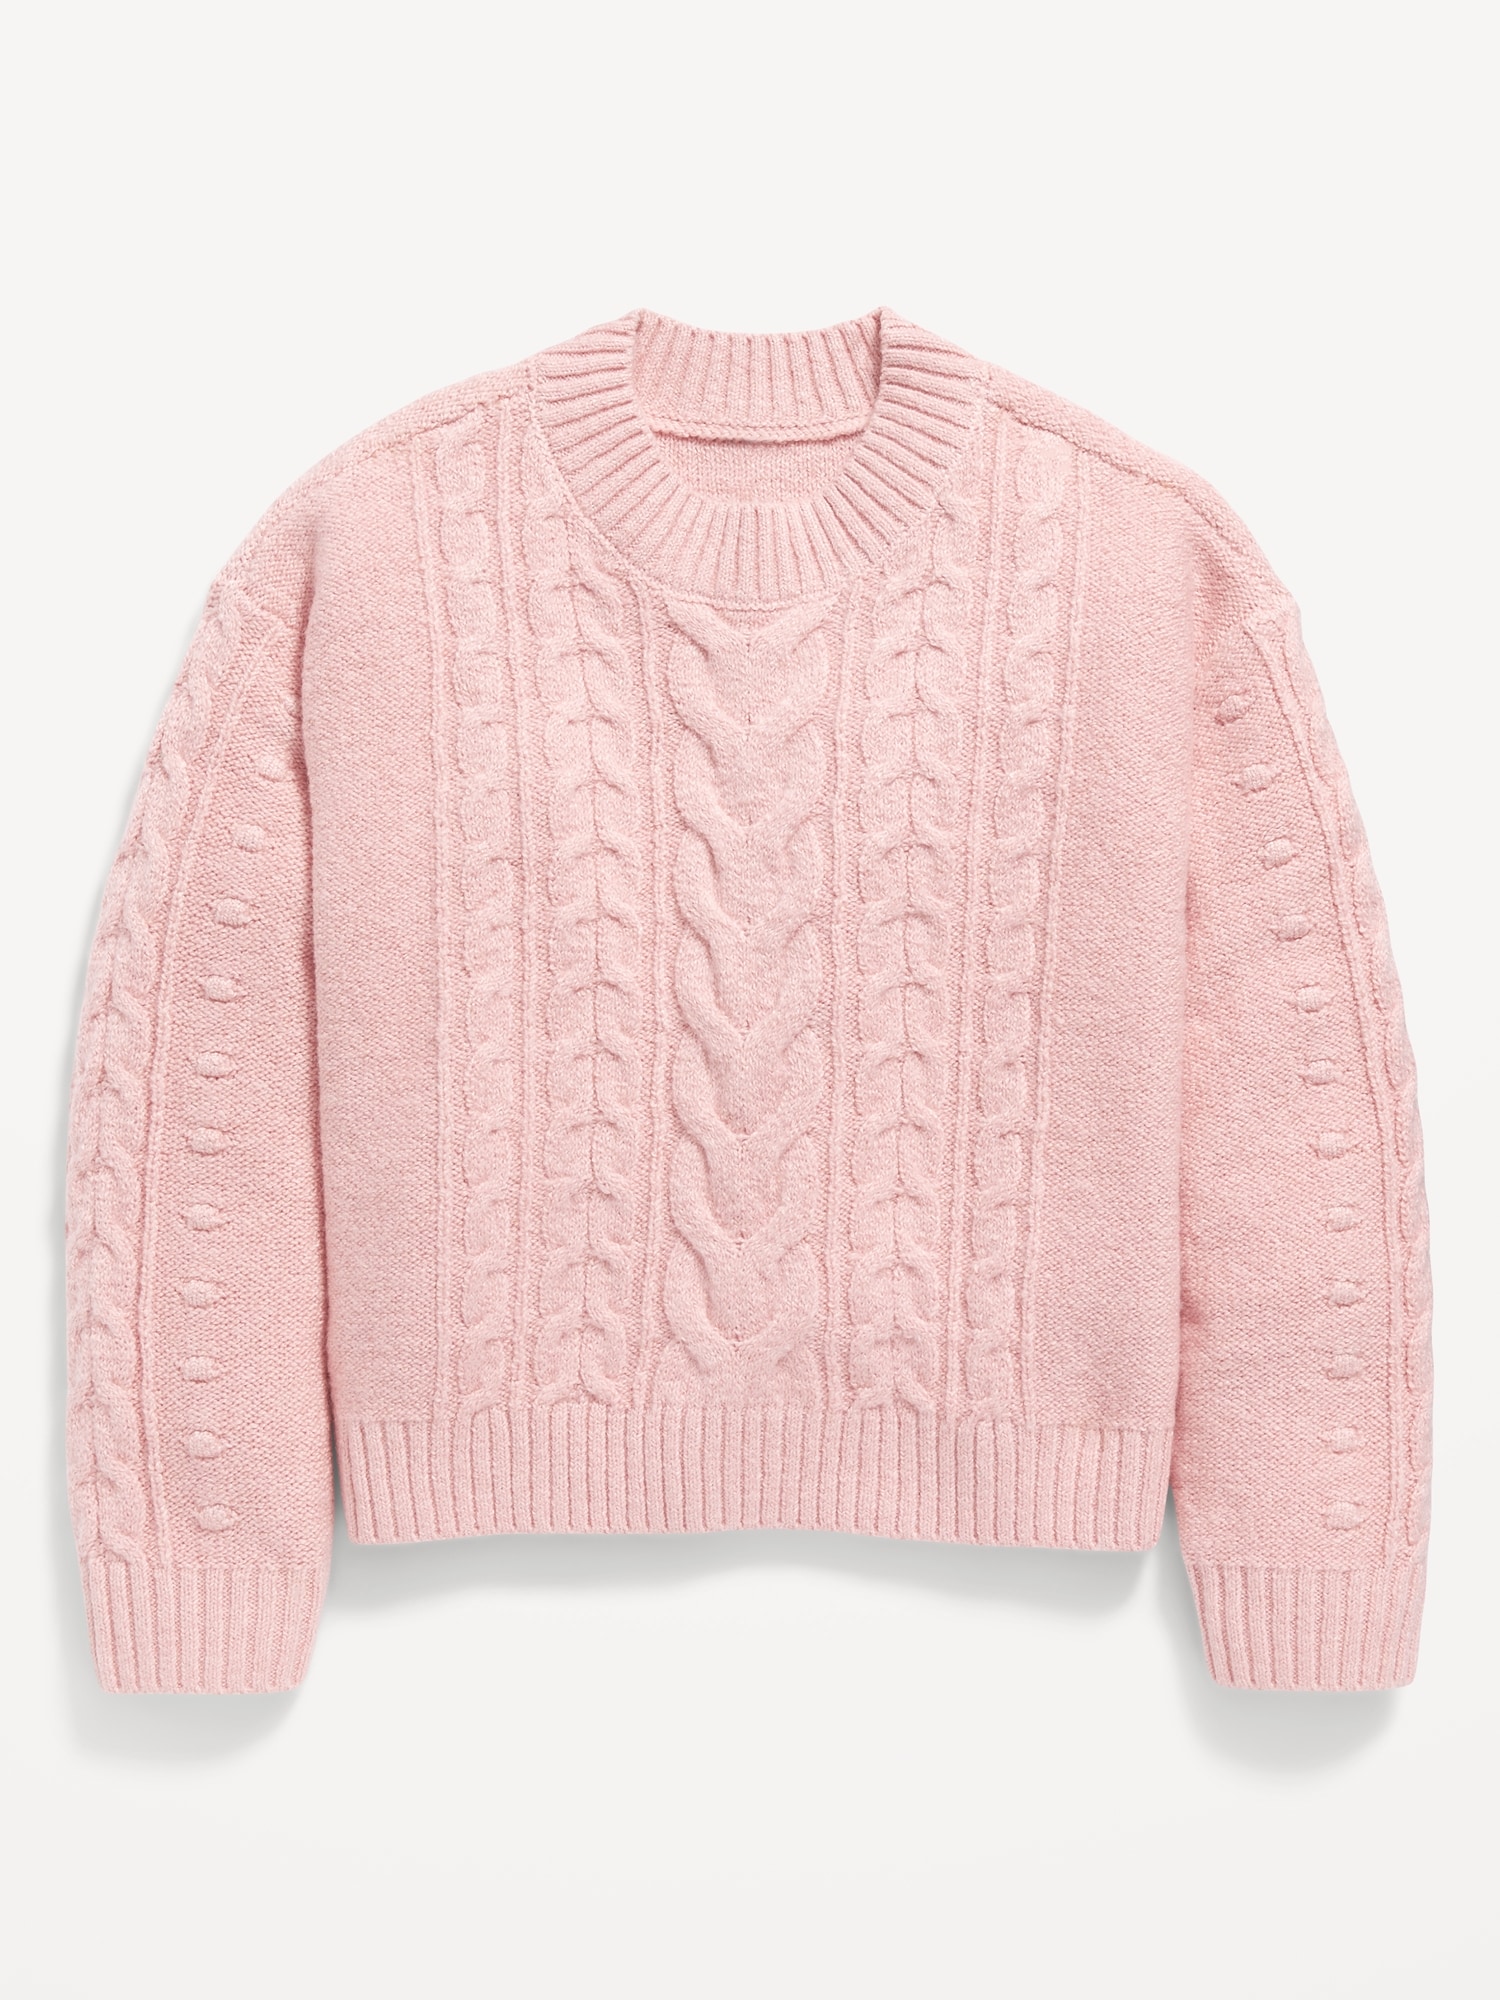 Pink boxy open-knit sweater